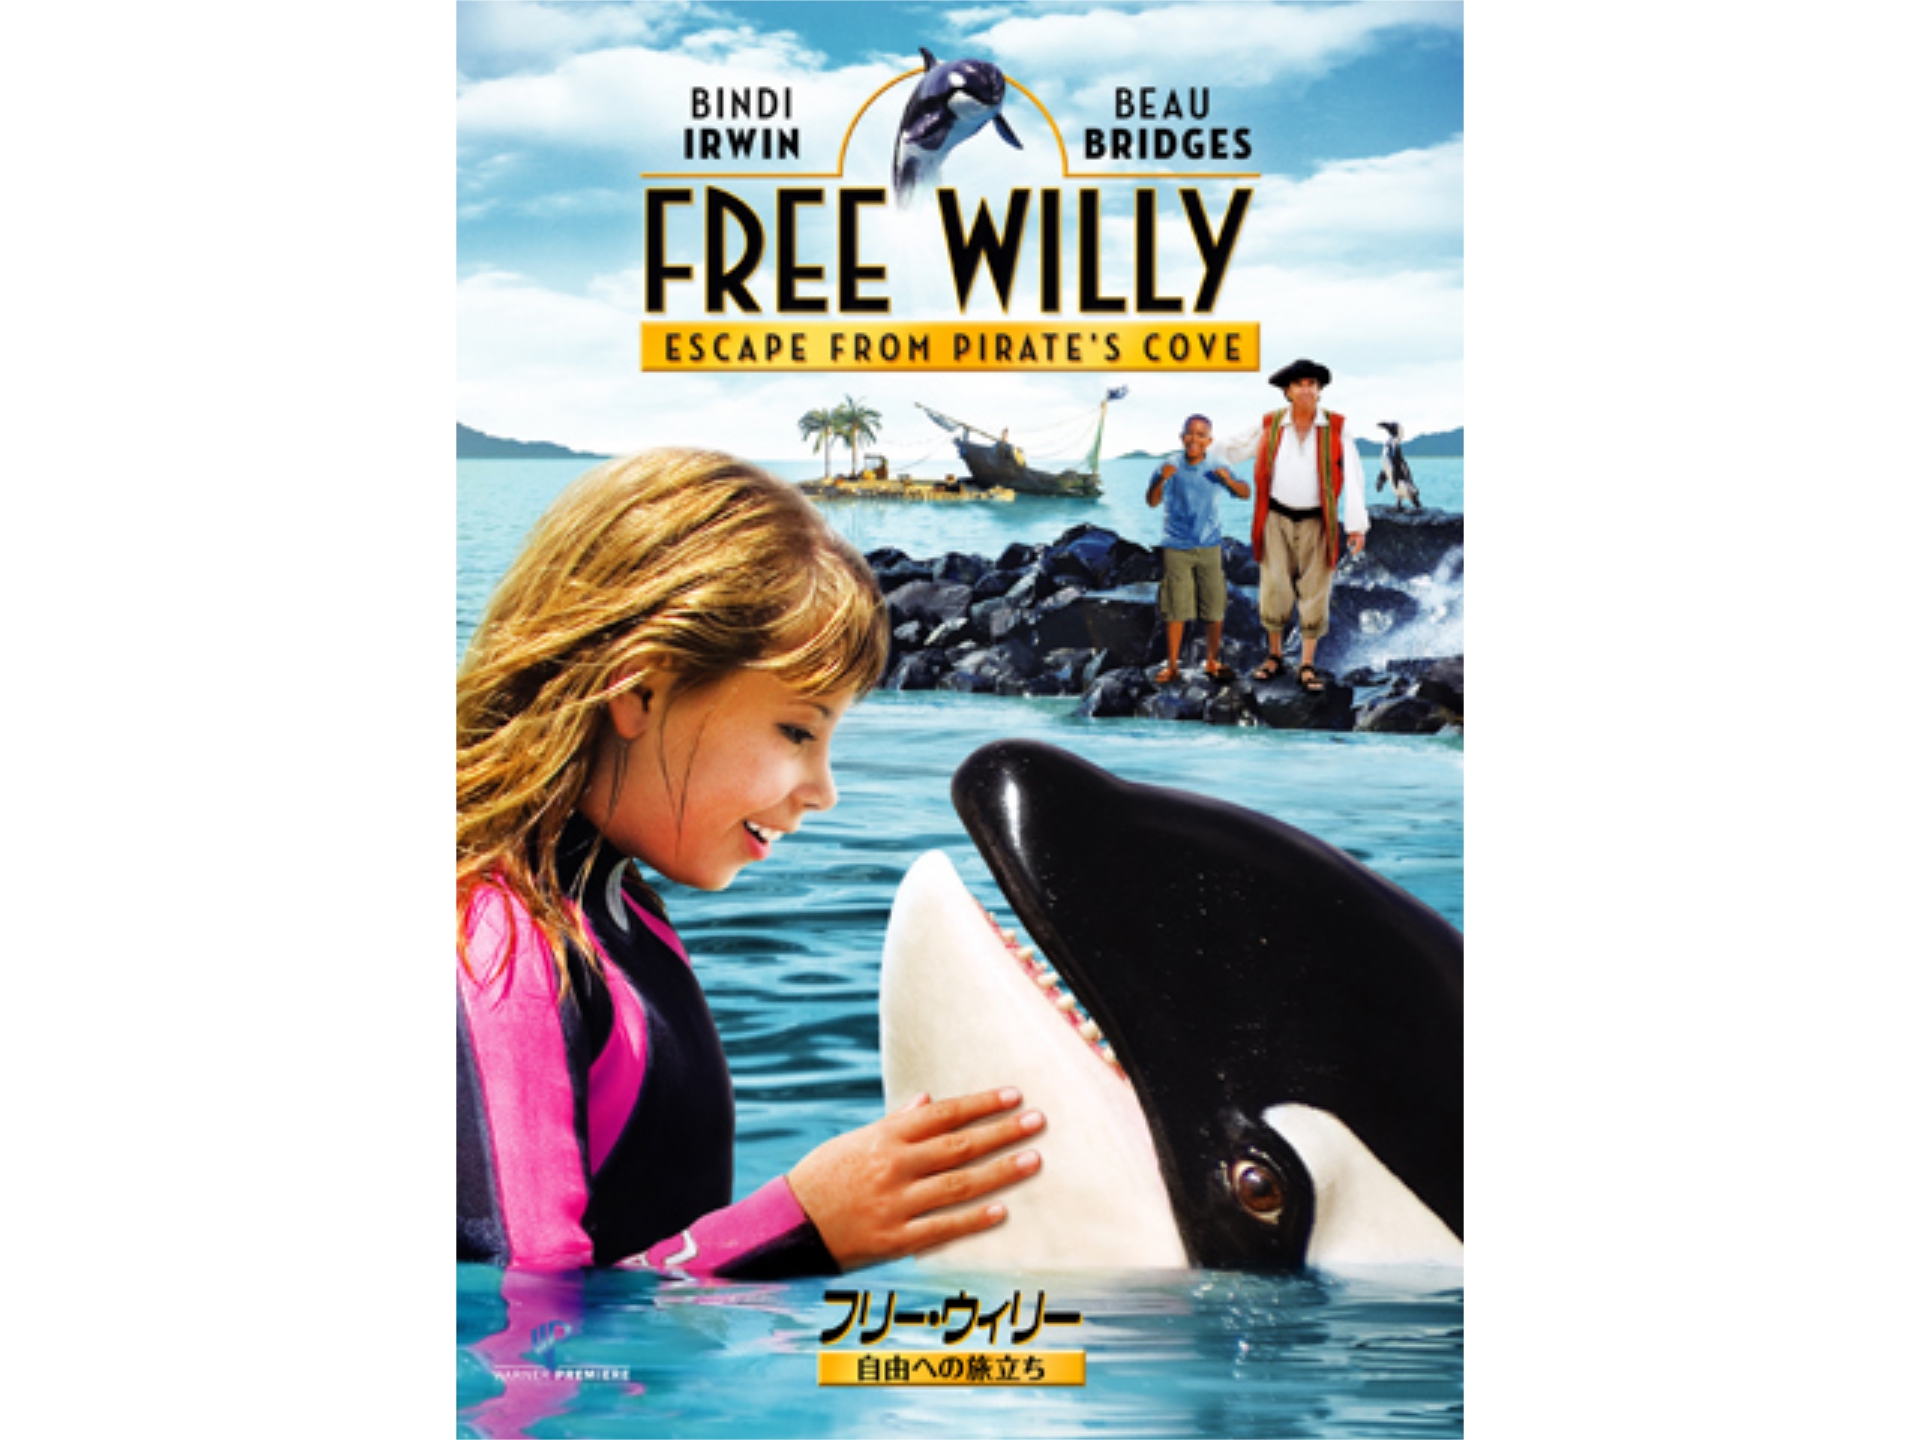 映画 フリー ウィリー 自由への旅立ち の動画 初月無料 動画配信サービスのビデオマーケット